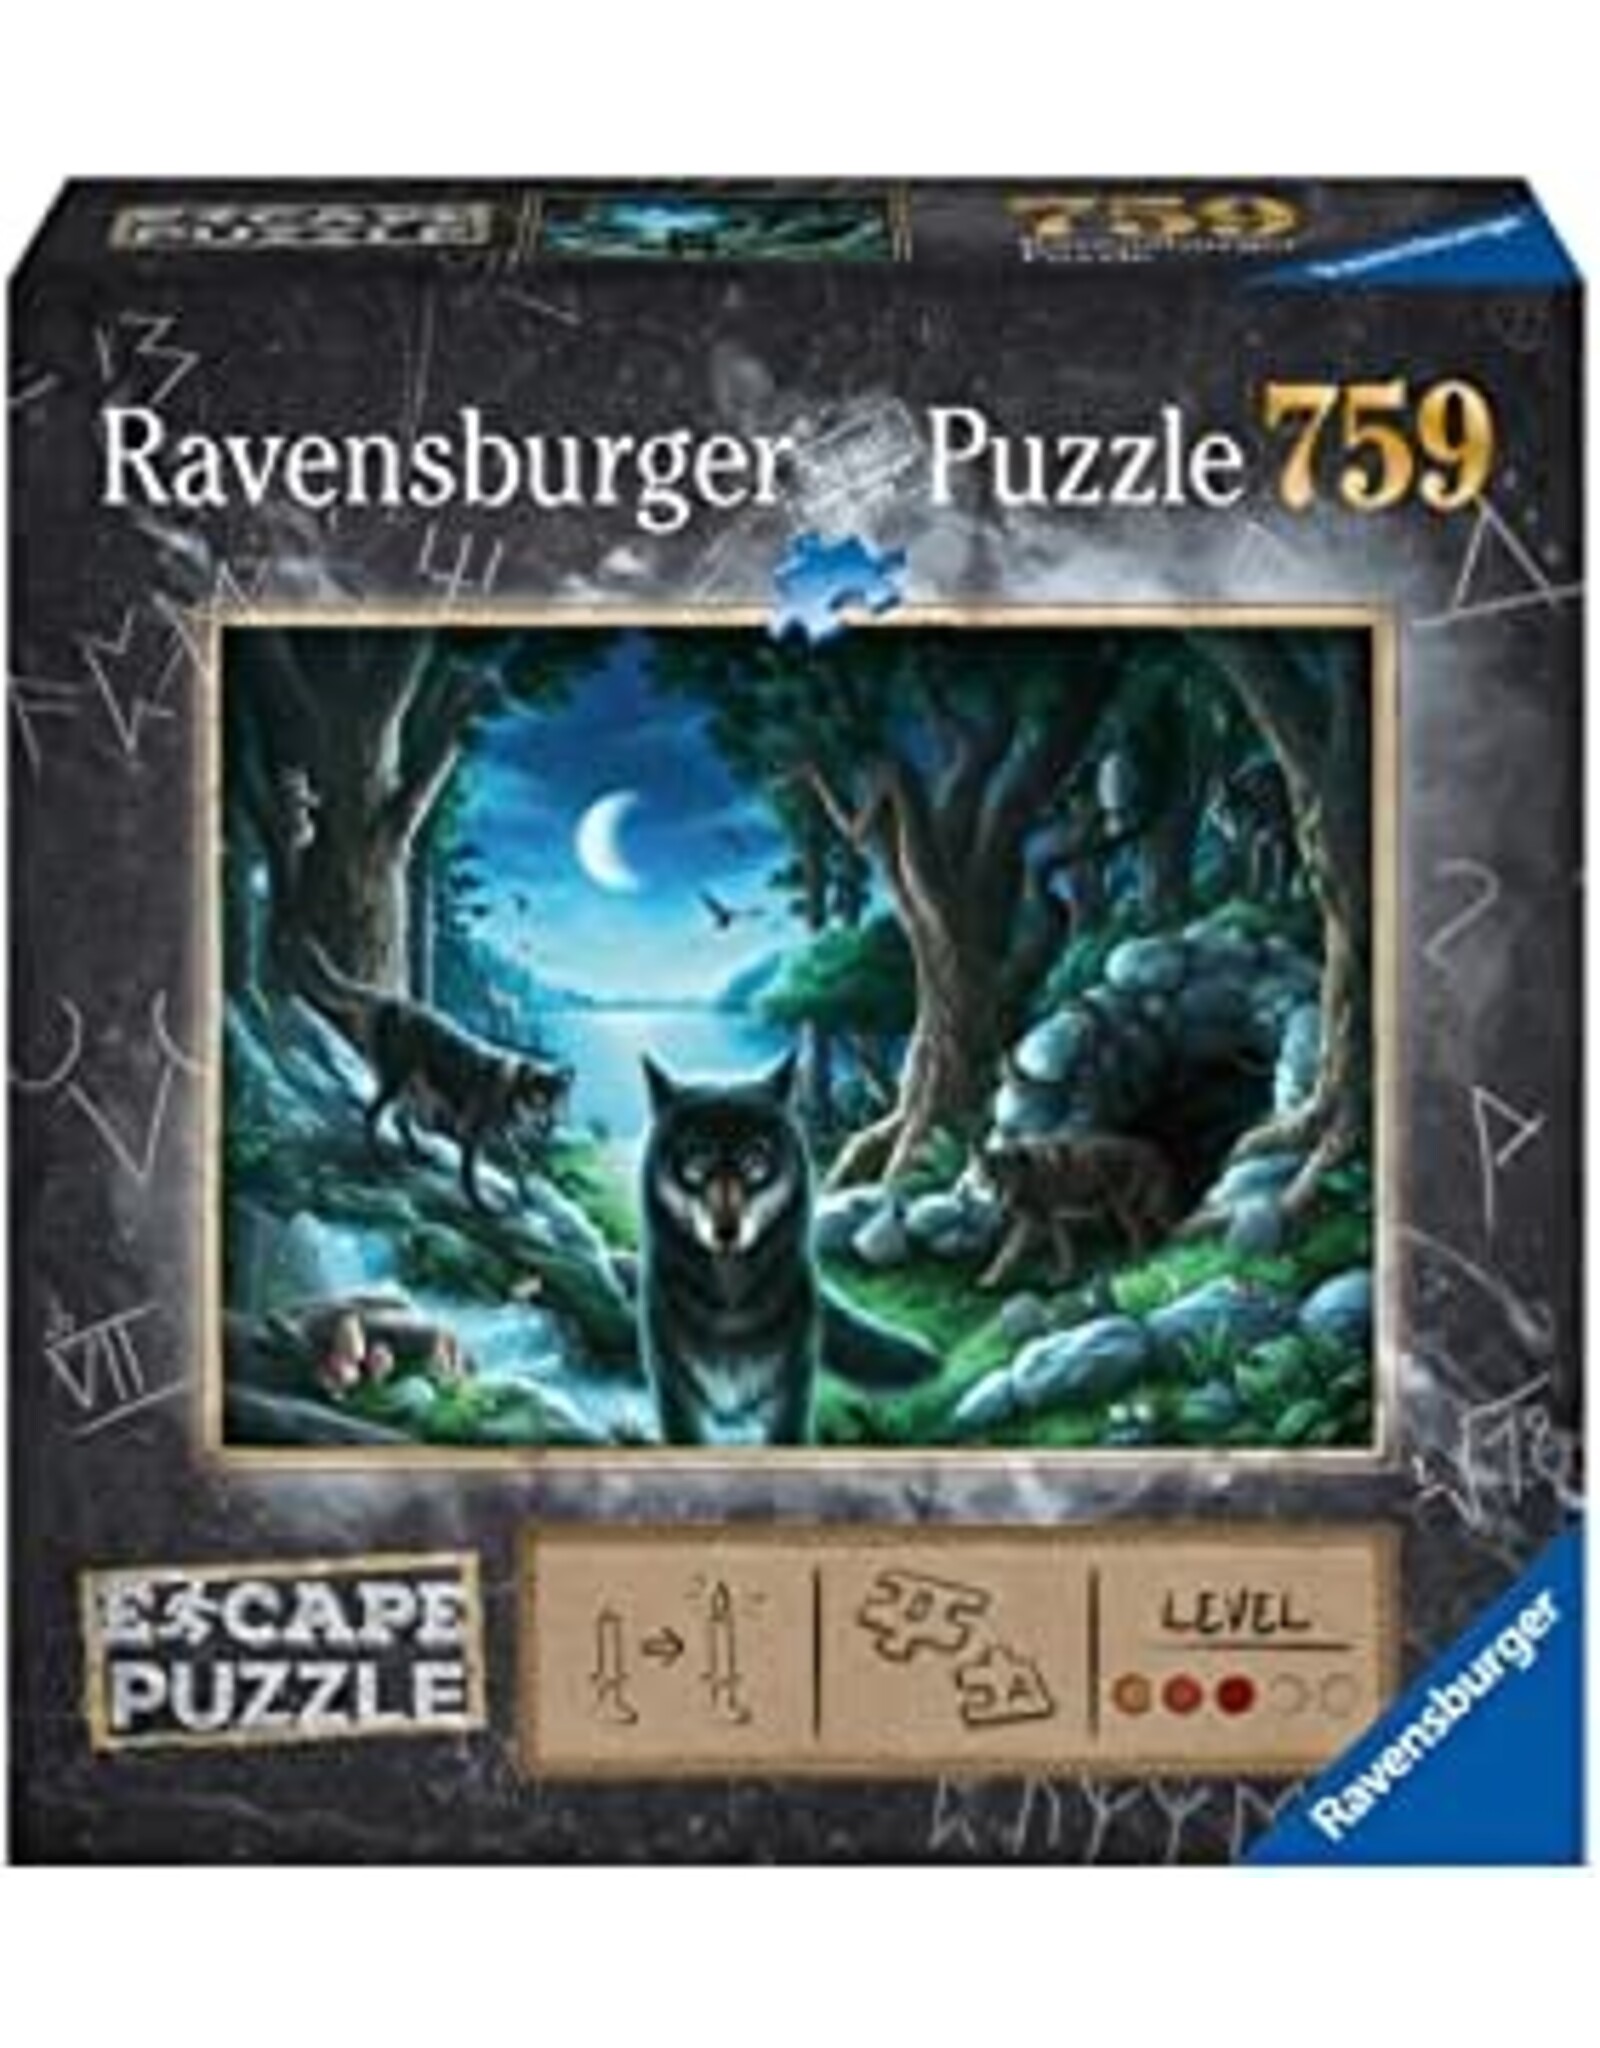 Ravensburger Curse of the Wolves Escape 759 Piece Puzzle